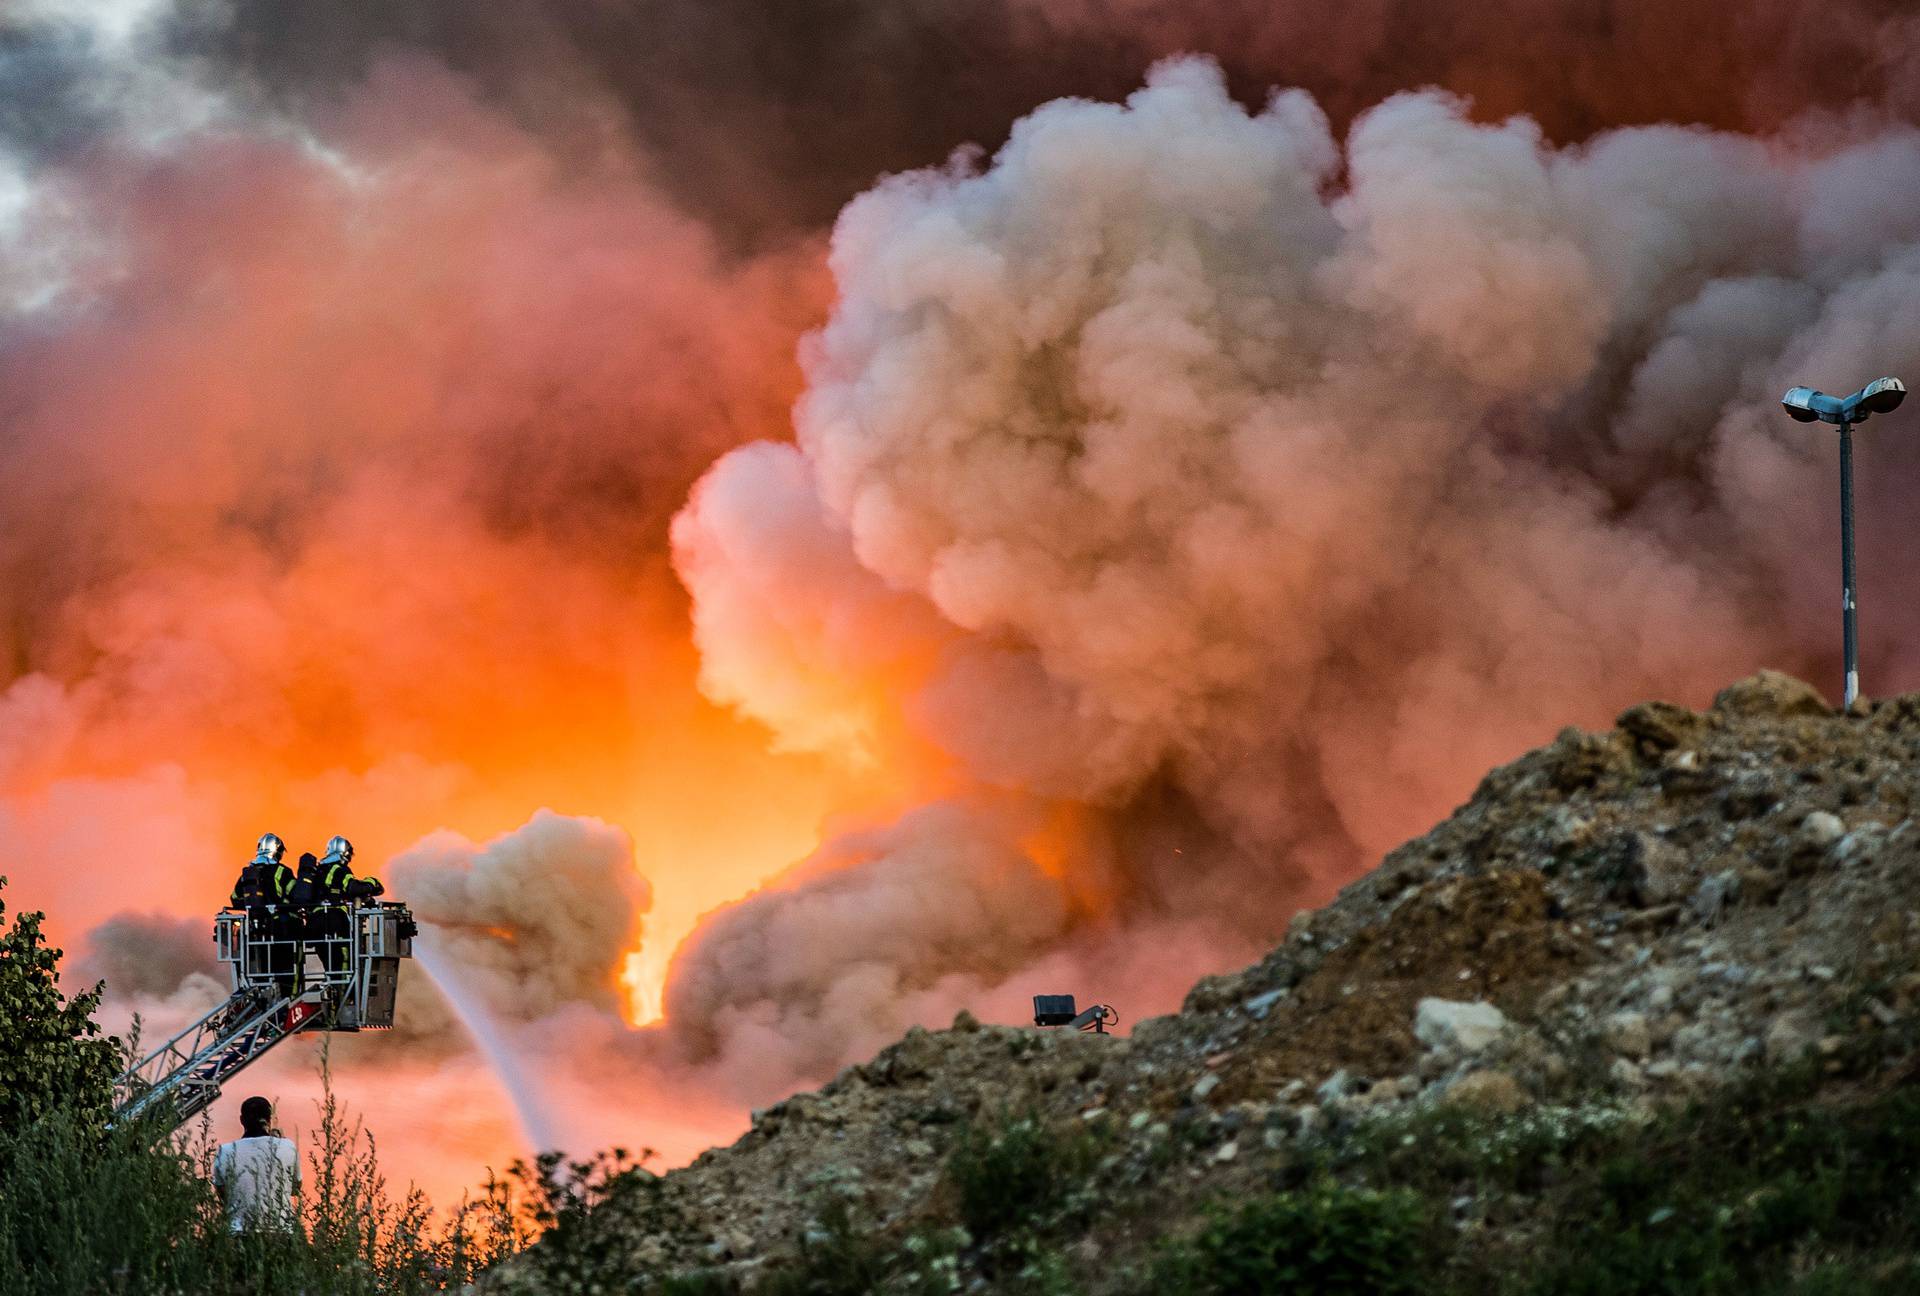 Prljavštine u Čistoći: Krivi za požar na Jakuševcu i dobili su čak 350 tisuća kuna kazne!